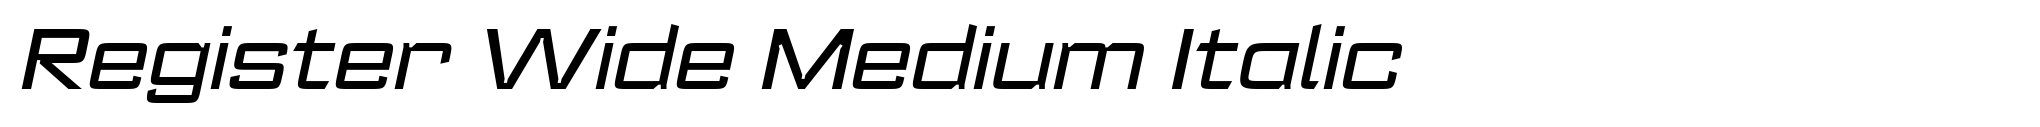 Register Wide Medium Italic image